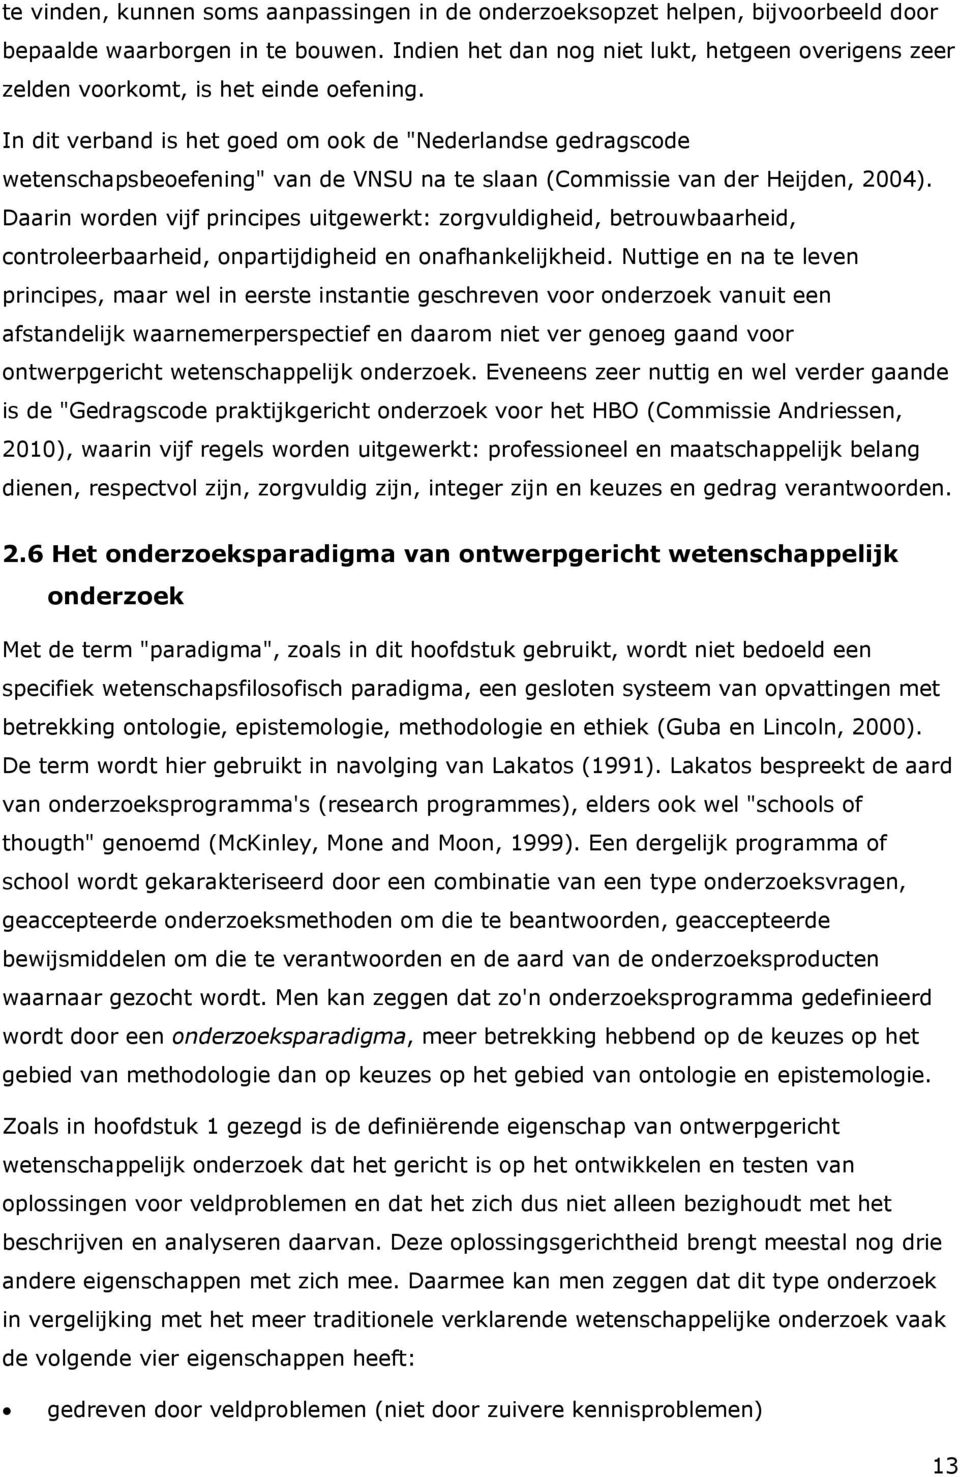 In dit verband is het goed om ook de "Nederlandse gedragscode wetenschapsbeoefening" van de VNSU na te slaan (Commissie van der Heijden, 2004).